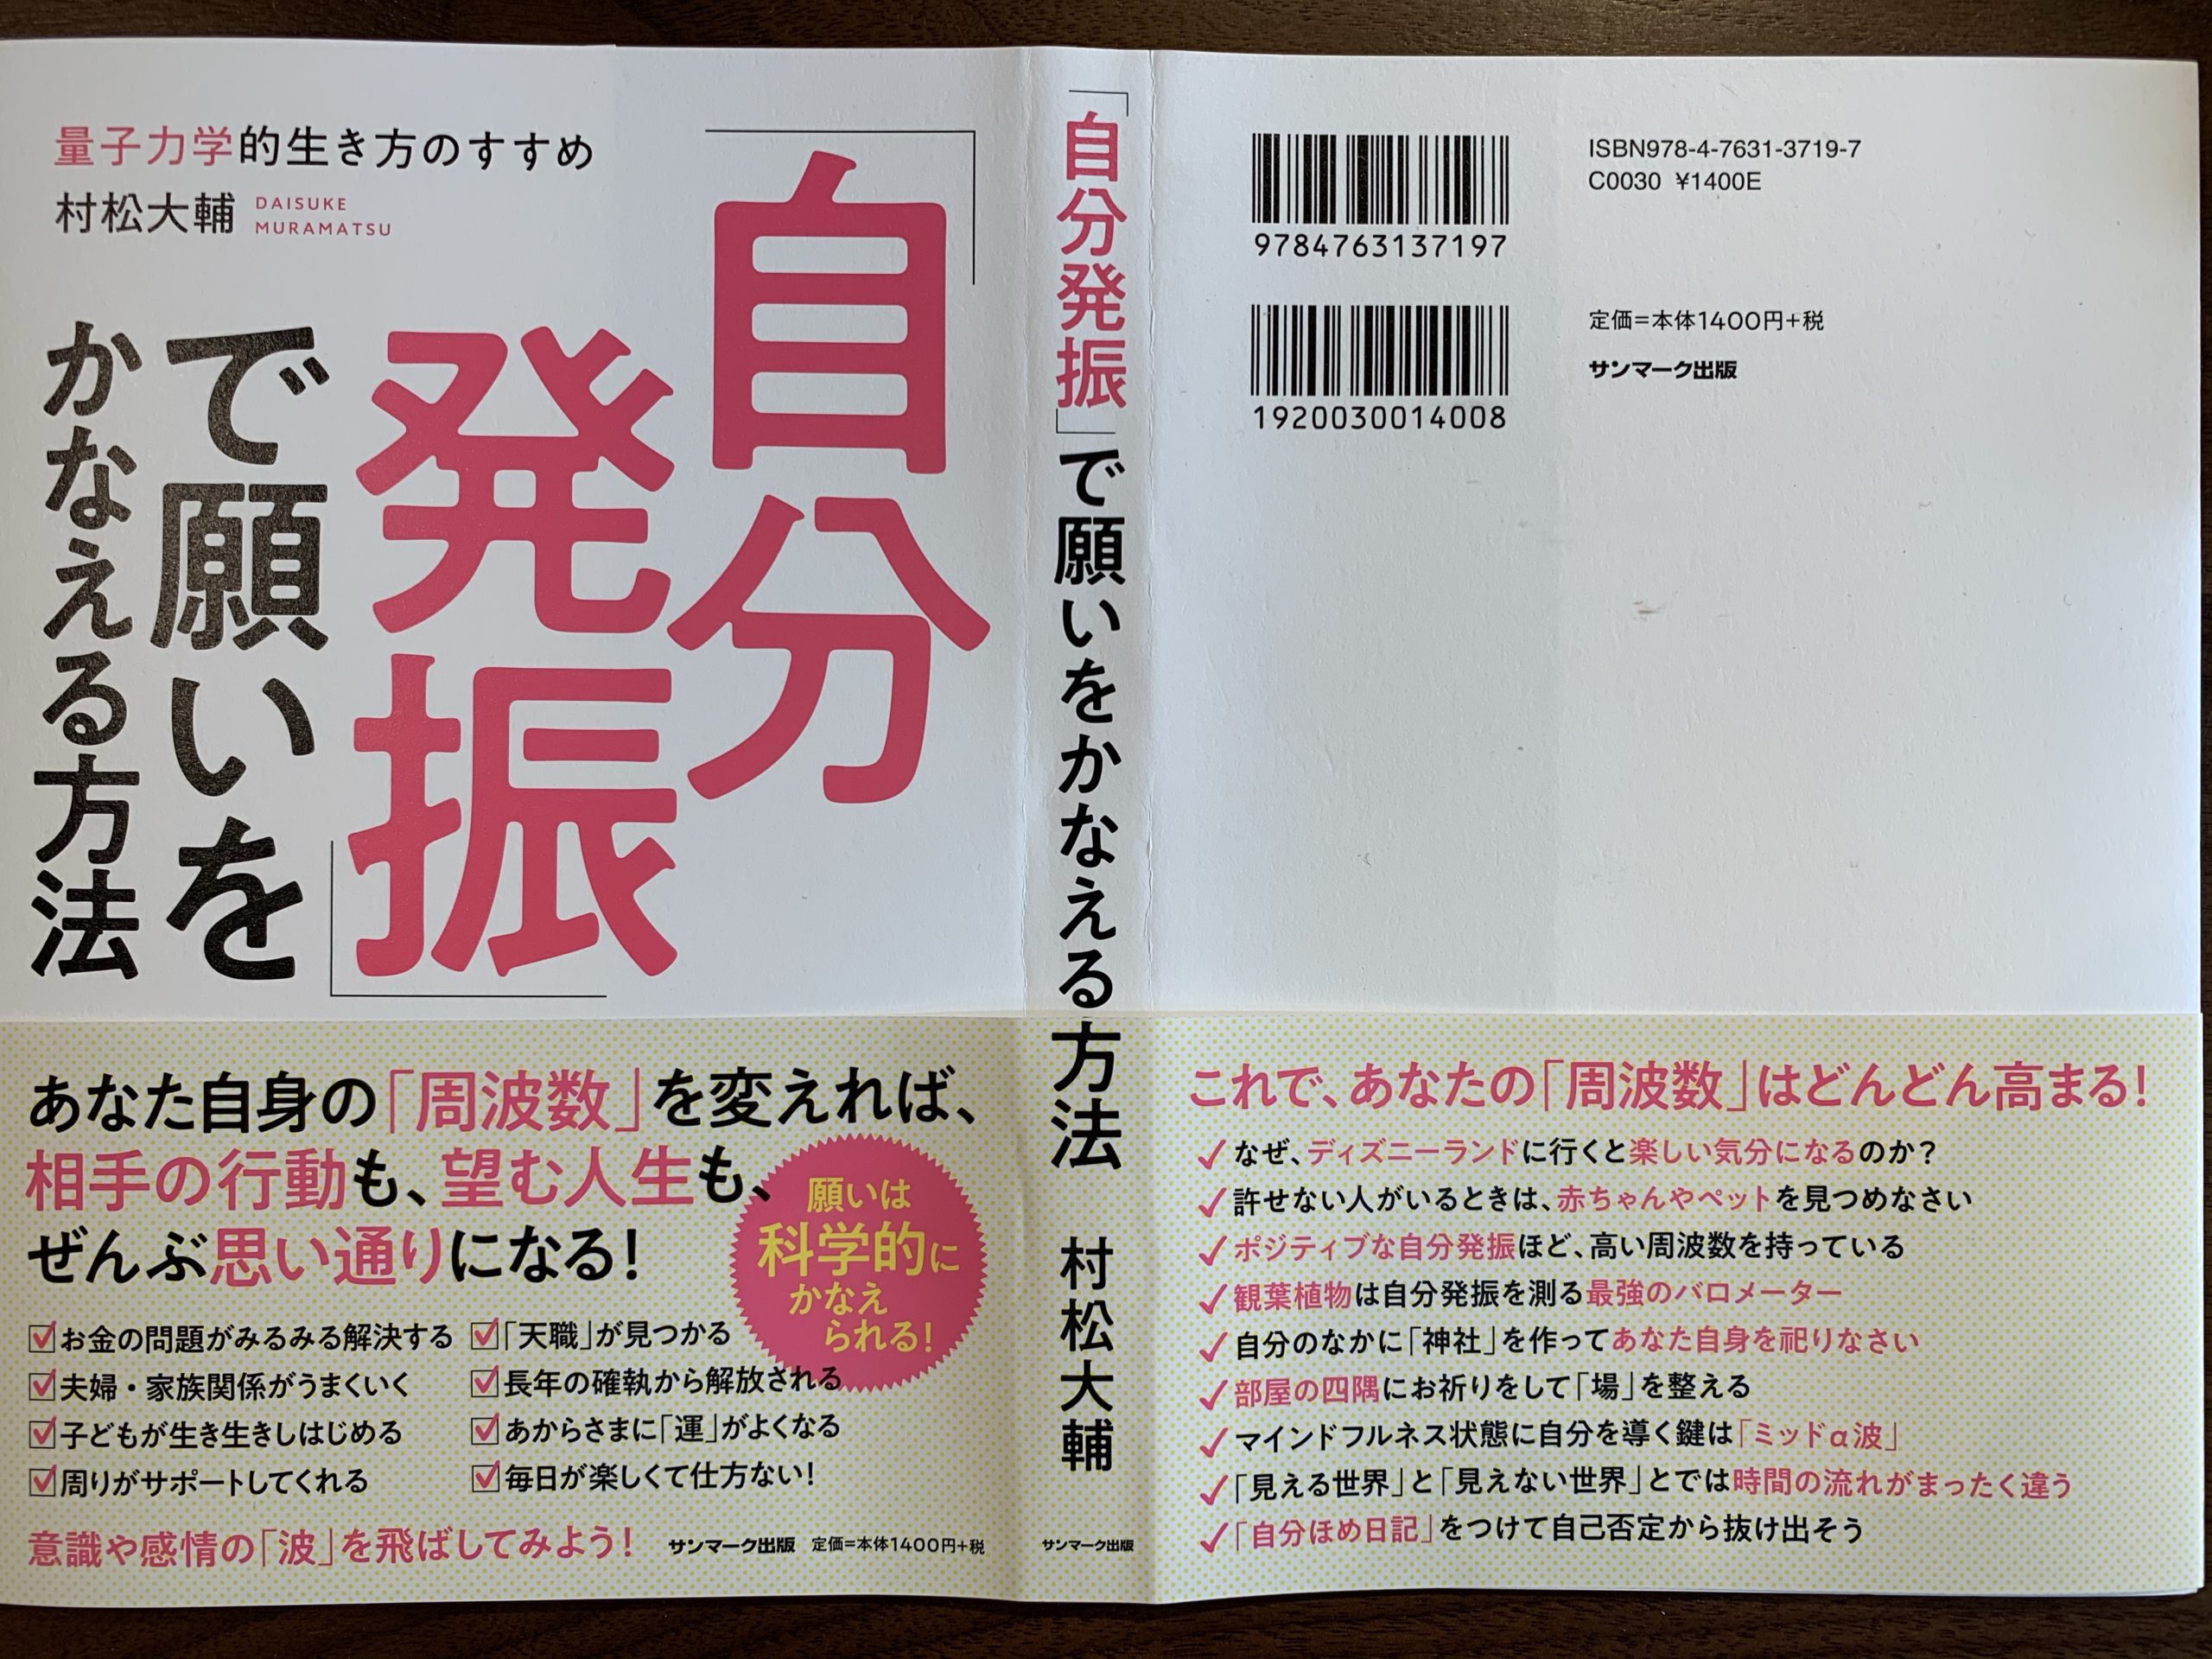 宇多田ヒカルさんの【Hikaru Utada Laughter in the Dark Tour 2018】 (完全生産限定スペシャルパッケージ) (DVD+Blu-ray) (特典なし)を購入しました